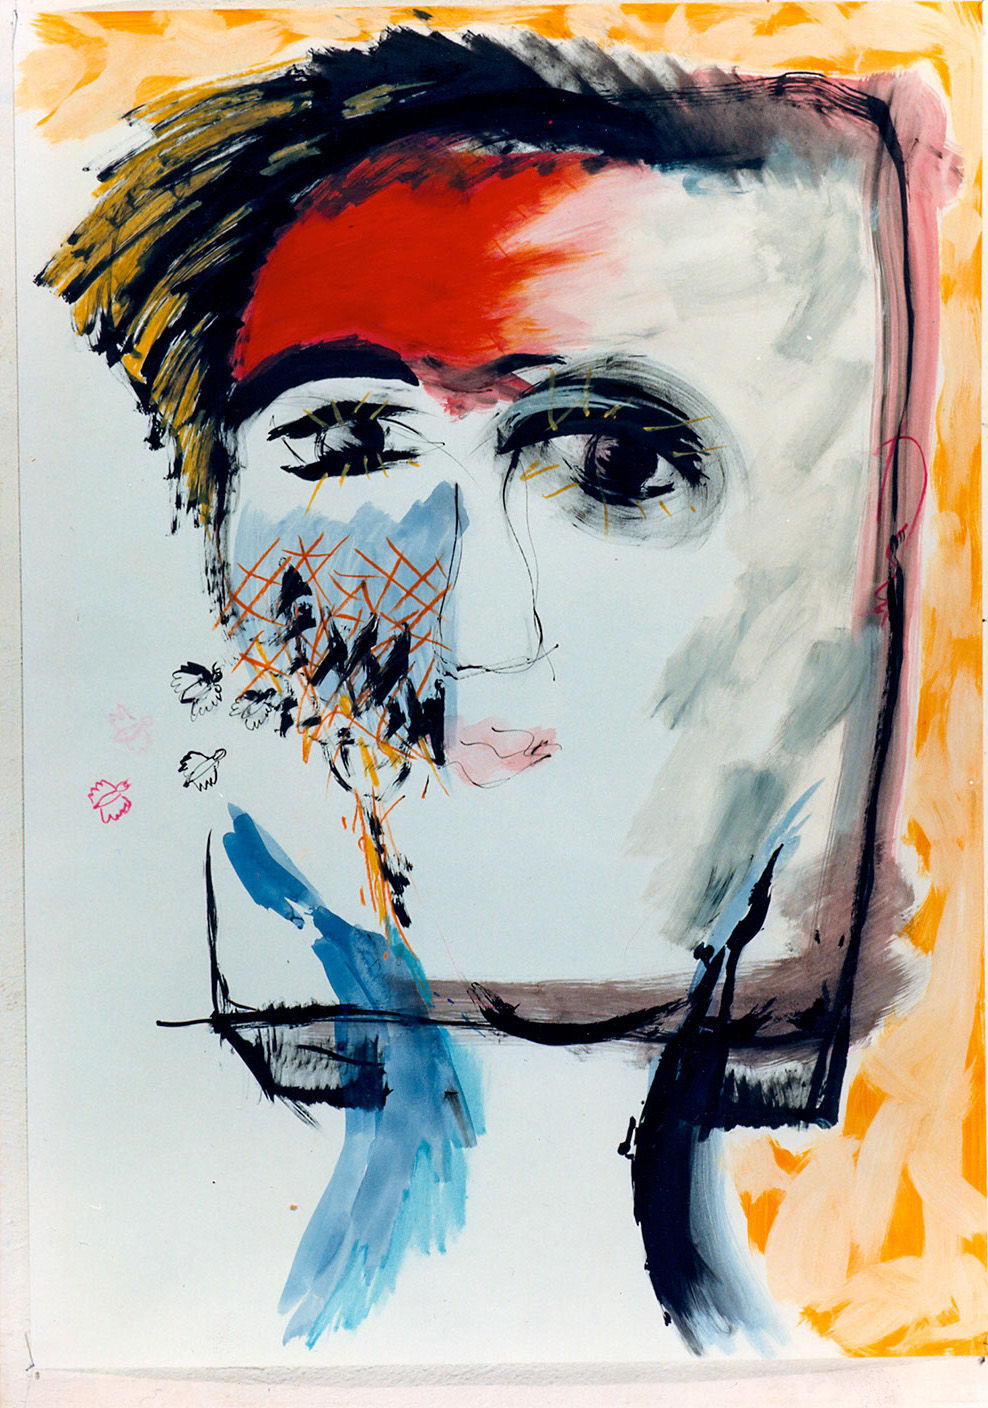 Τιτλος: Πρόσωπο 7
Υλικά: Ακρυλικό, Μελάνι, Λαδοπαστέλ σε χαρτί
Μέγεθος: 100x70 cm
Έτος: 1986